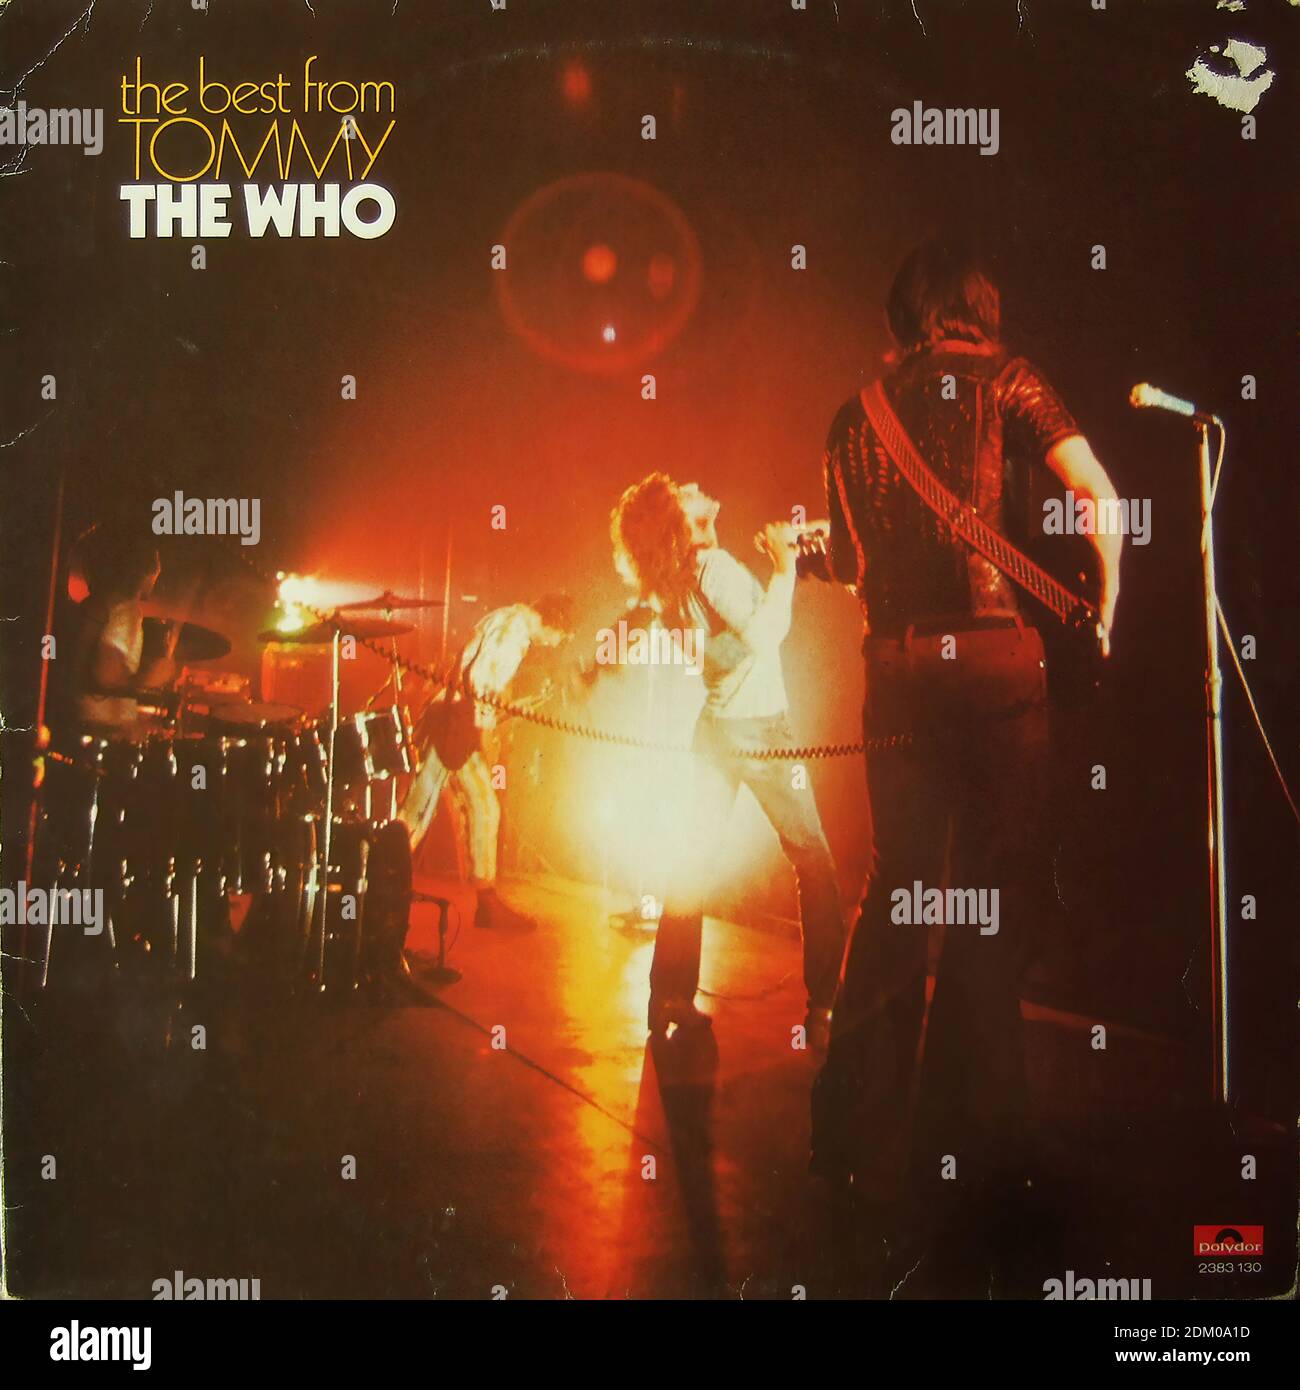 The Who - The Best from Tommy, Polydor 2383 130 - copertina di un album in vinile d'epoca Foto Stock